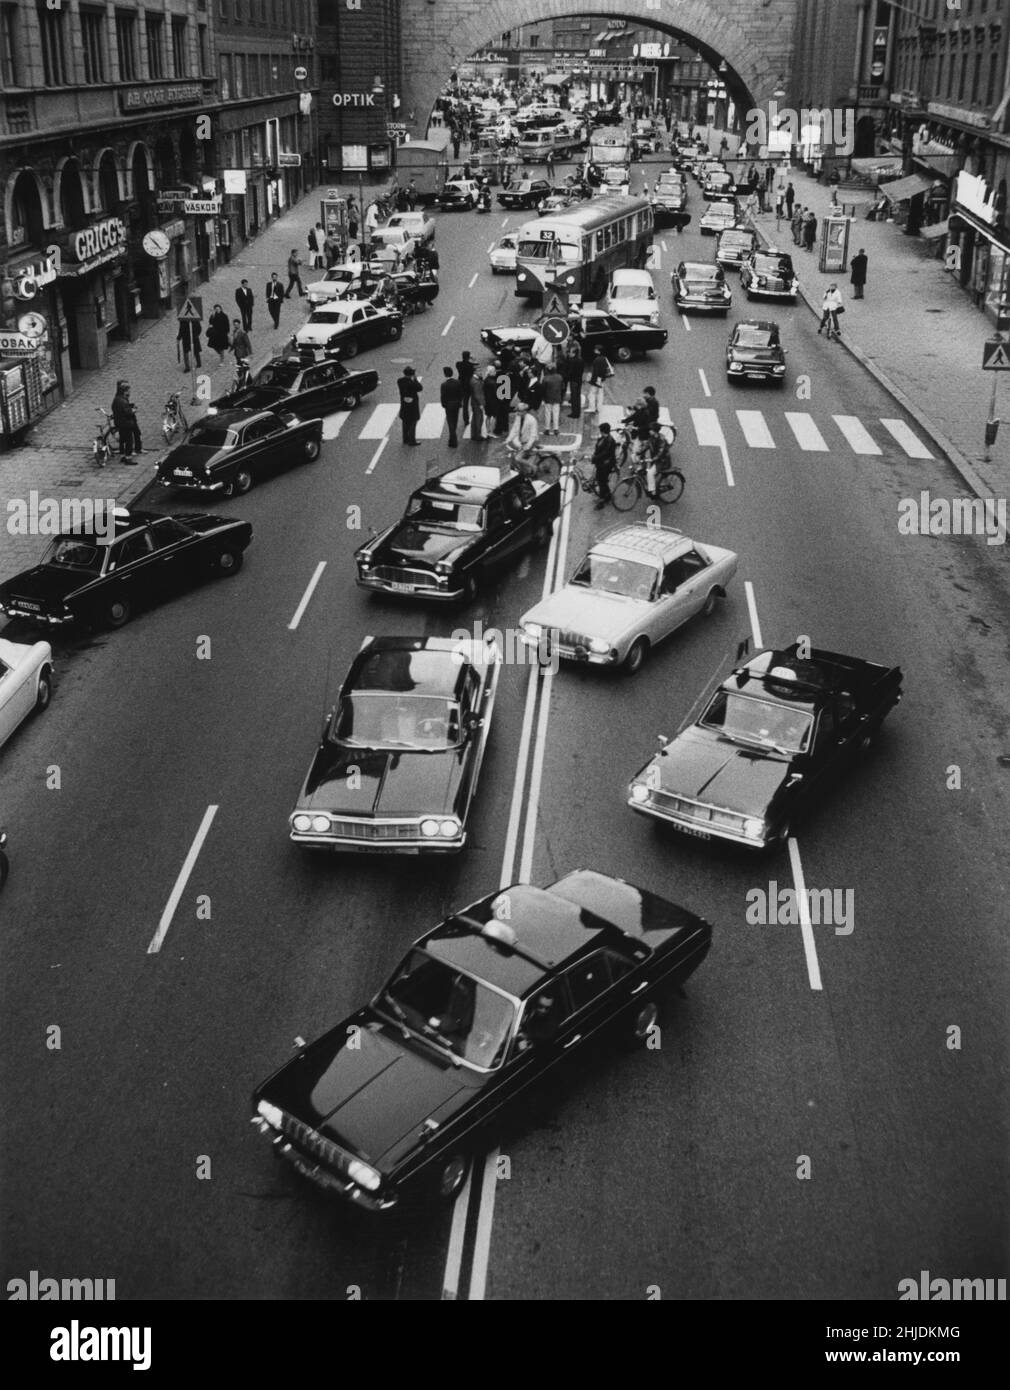 Am Tag, an dem Schweden auf der linken Seite fuhr, wurde es auf der rechten Straßenseite gefahren. Bild aus dem Moment um 5 Uhr. Am 3 1967. september, als Autos die Seite wechseln und von links nach rechts gehen. Ein großes Ereignis, bei dem Befürchtungen geäußert wurden, dass die Unfälle aufgrund der Verschiebung viele sein würden, aber stattdessen stellte sich heraus, dass dies der umgekehrte Weg war. Die Stockholmer Straße Kungsgatan. Stockfoto